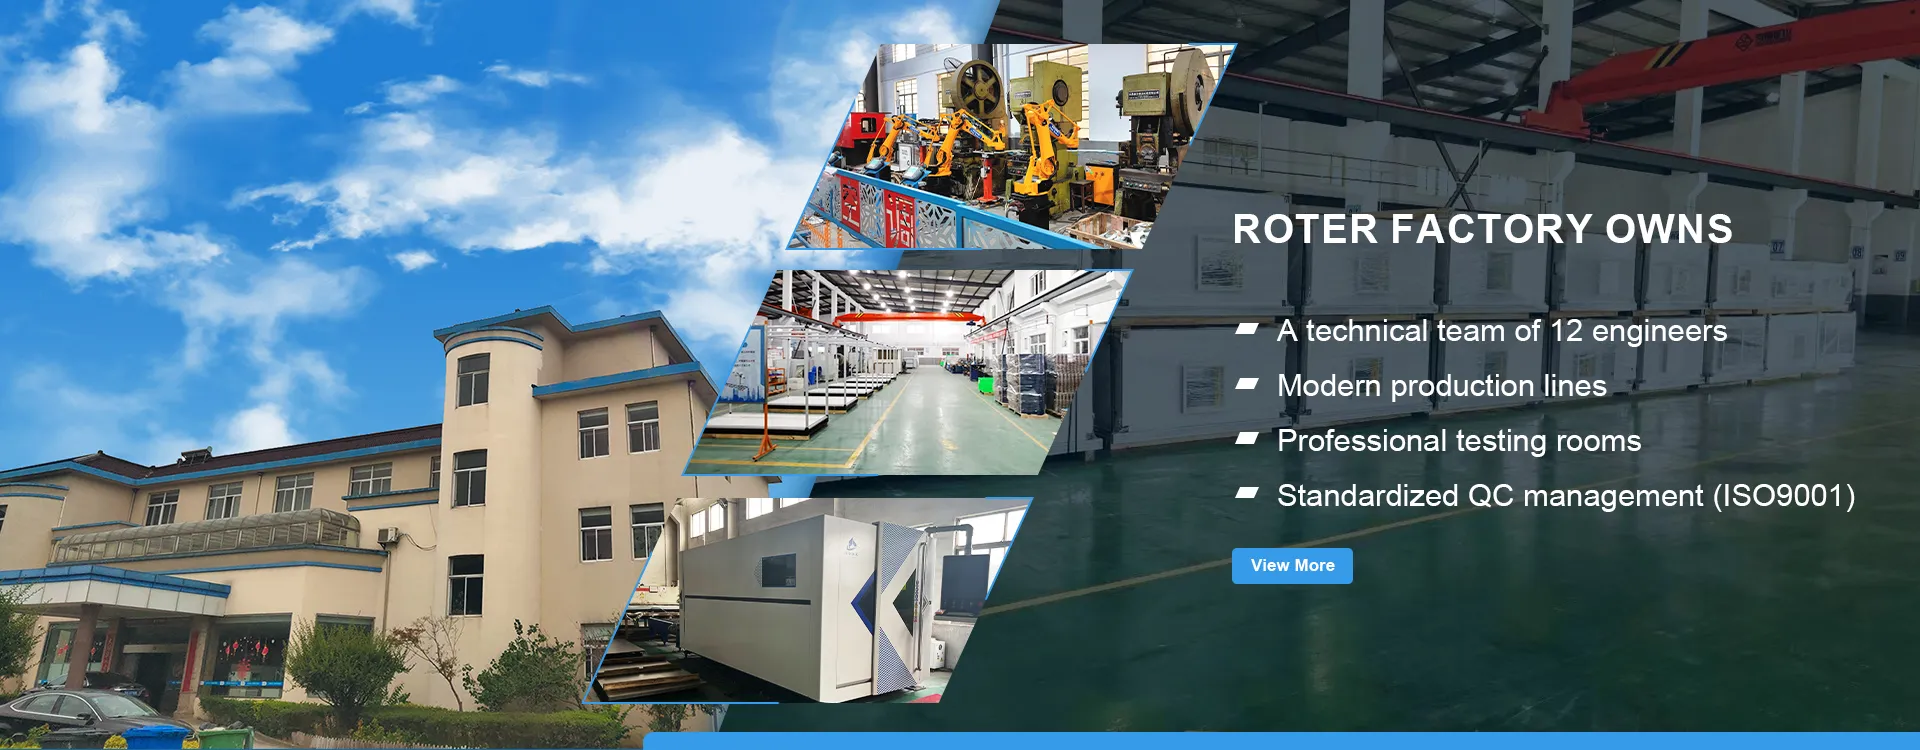 Roter (Shanghai) M&E Equipment Co., Ltd.